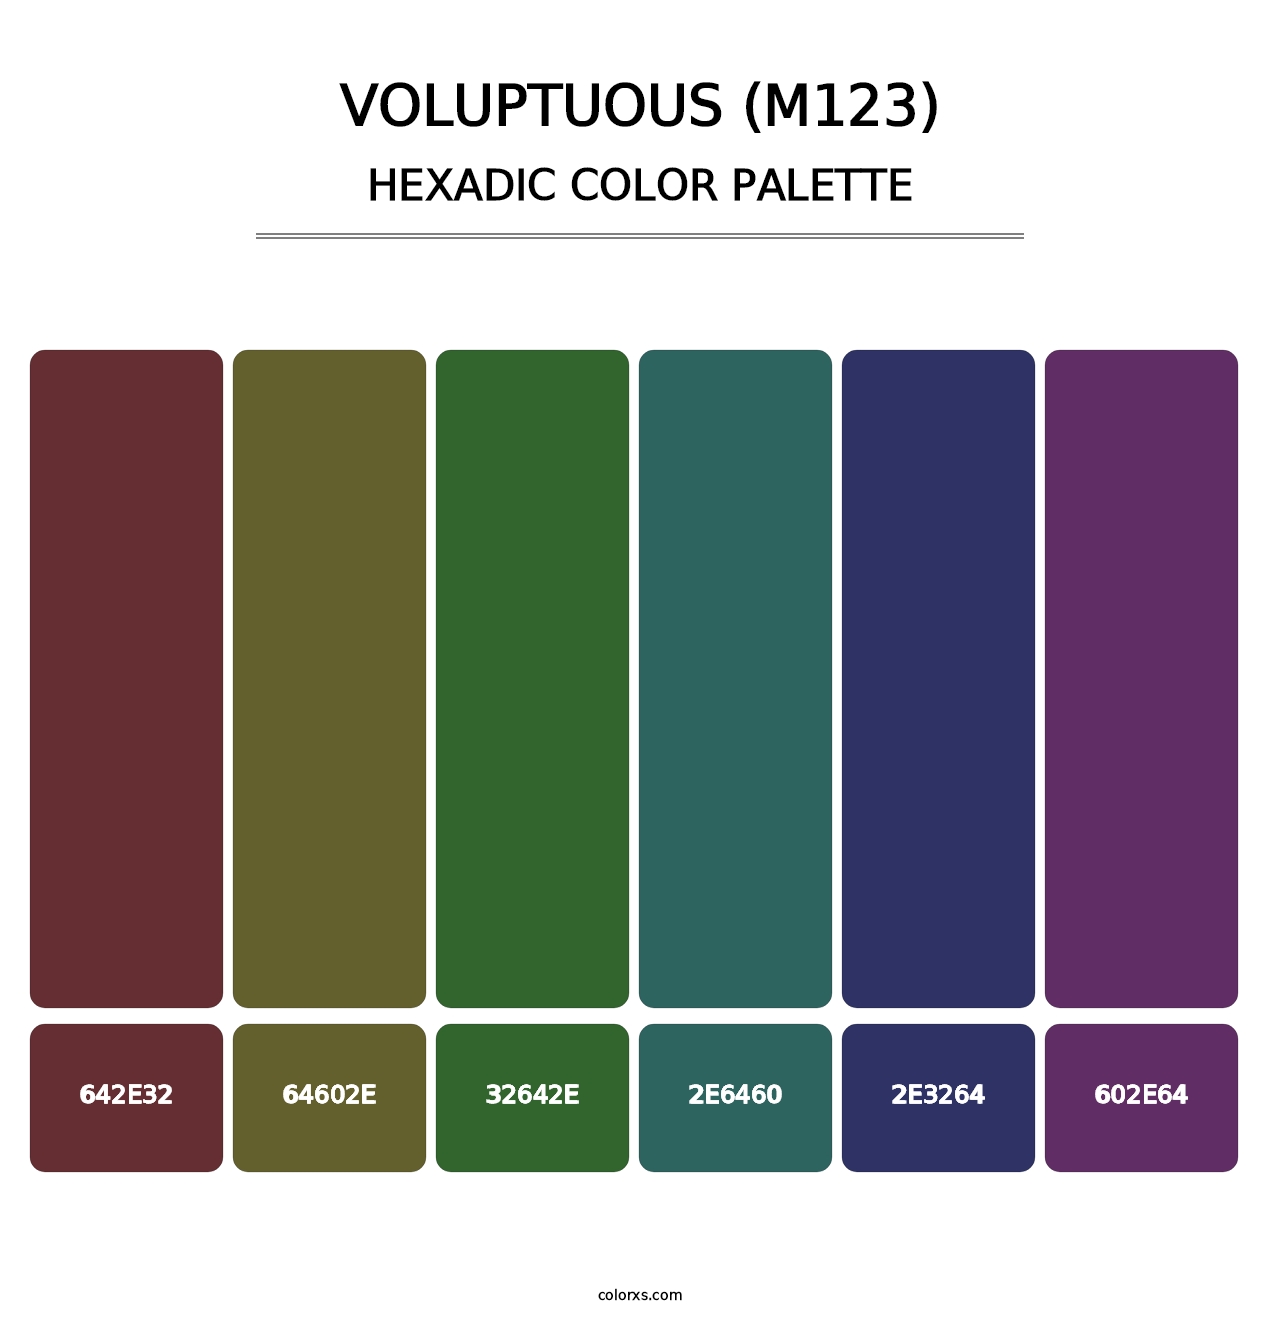 Voluptuous (M123) - Hexadic Color Palette